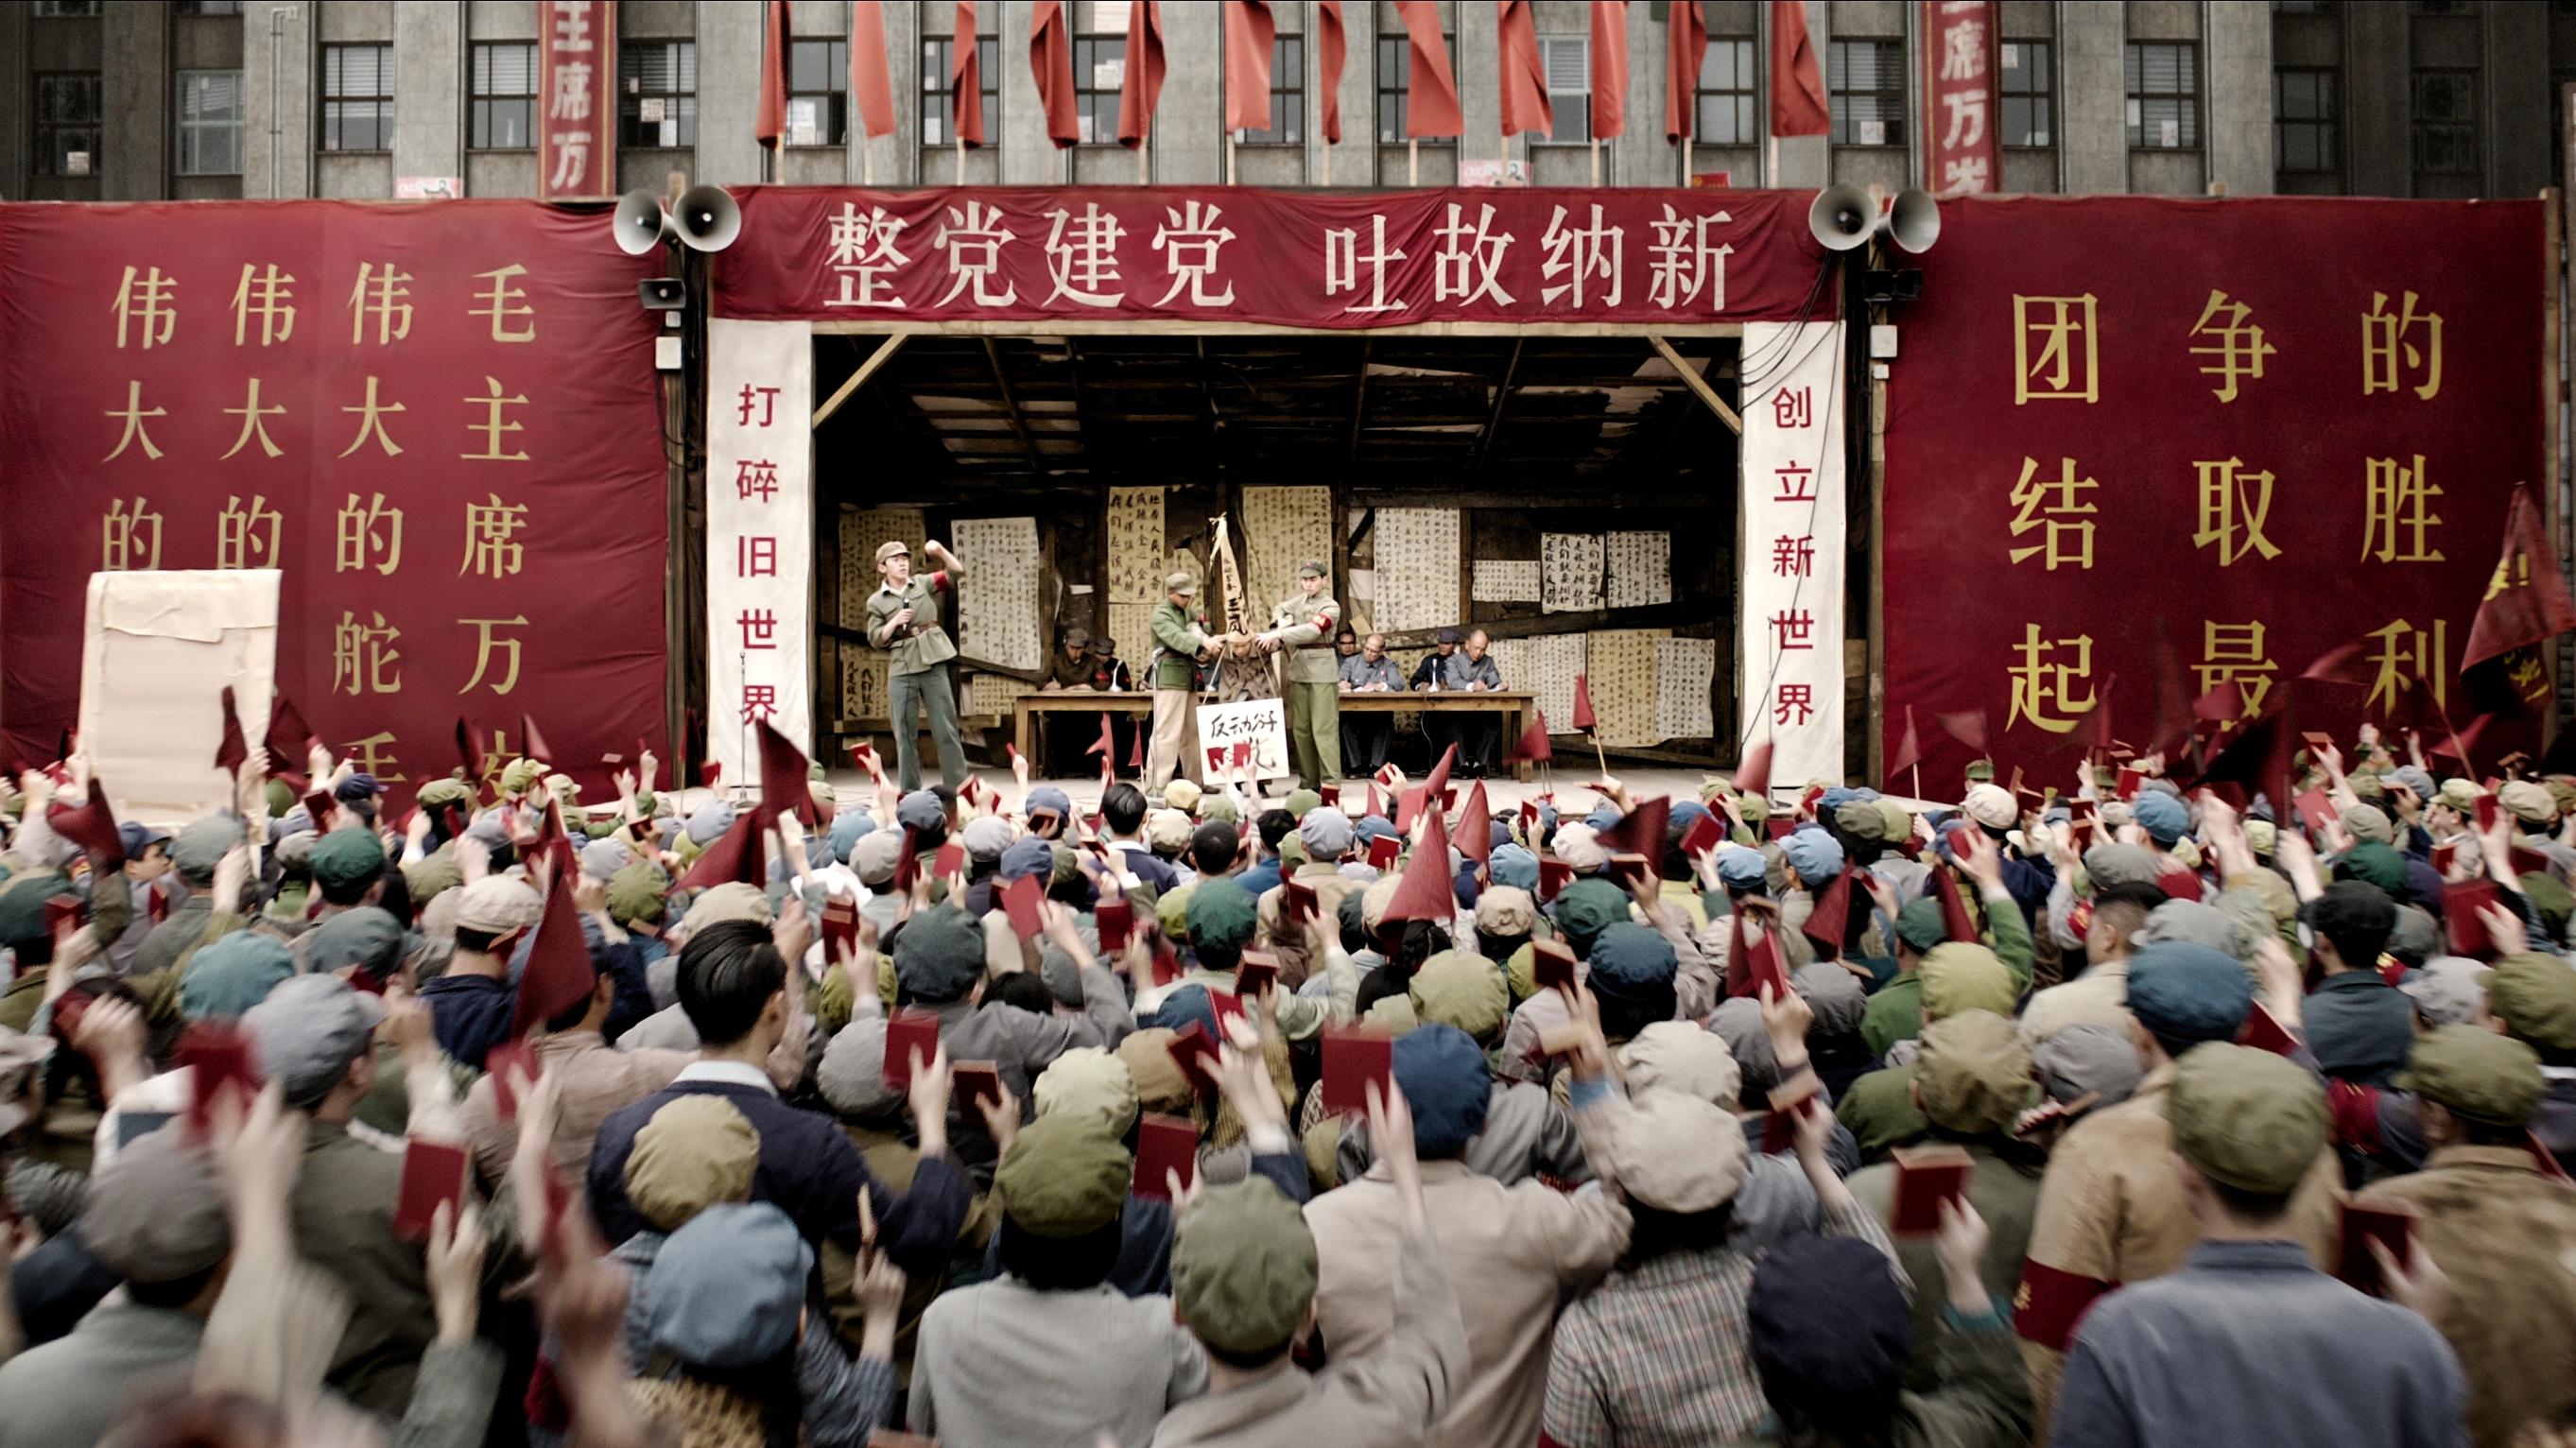 tribunal populaire chine 1966 dans le problème à 3 corps